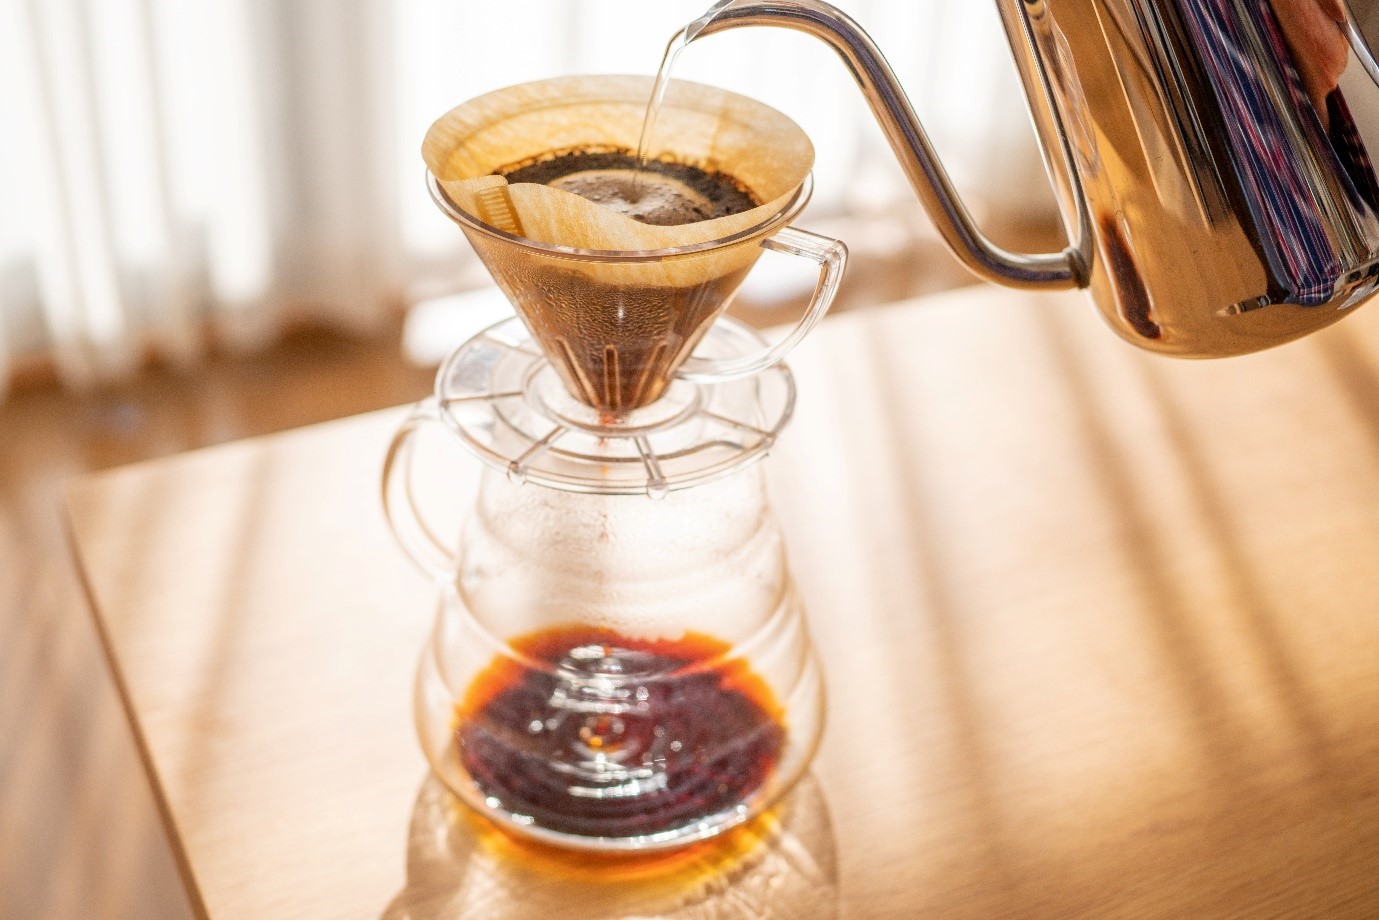 uống cà phê với lượng phù hợp có thể giúp giảm nguy cơ mắc các bệnh tim mạch và giảm nguy cơ đột quỵ